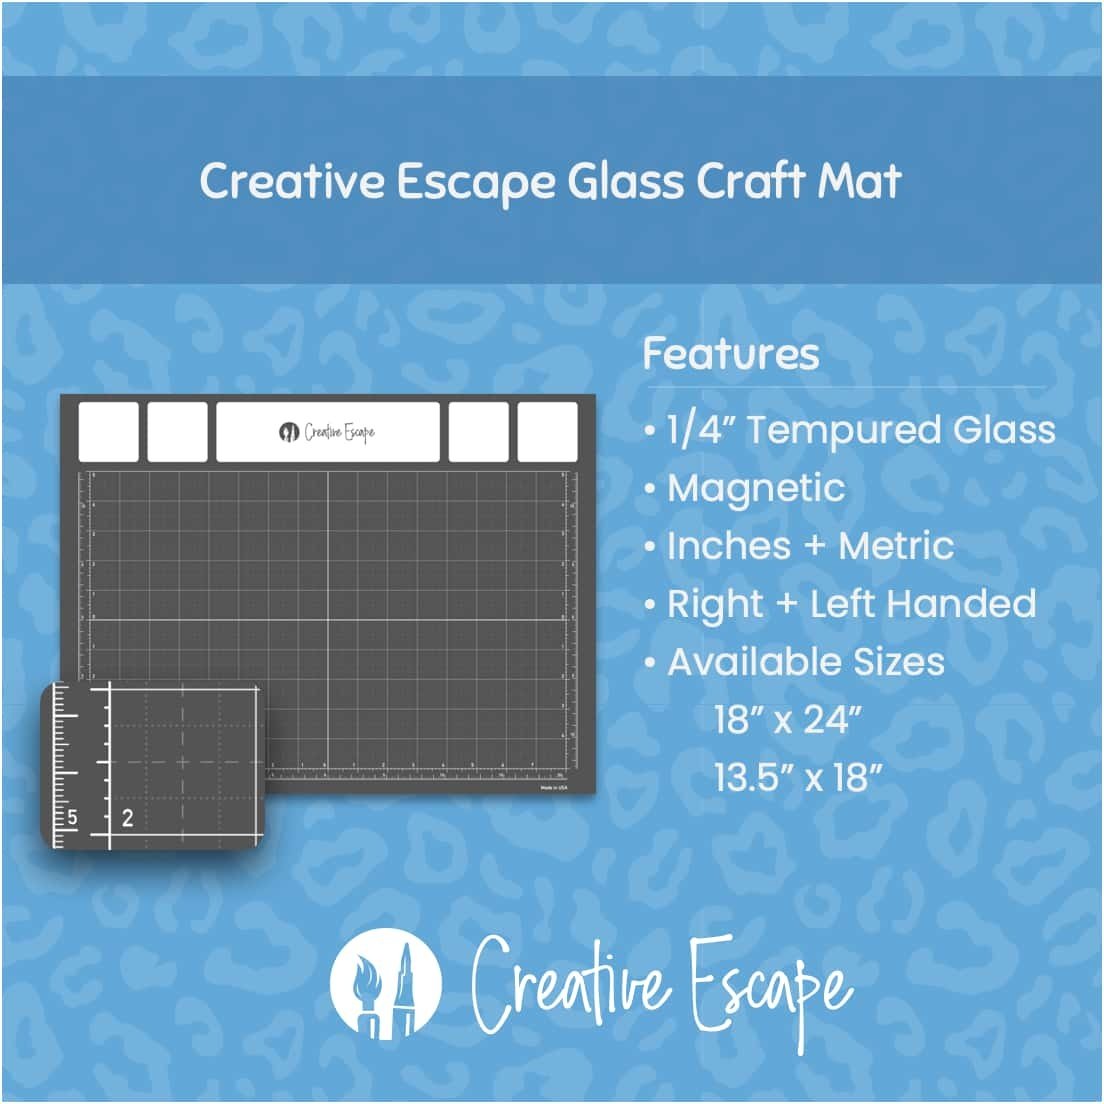 Media Grip Mat - Creative Escape